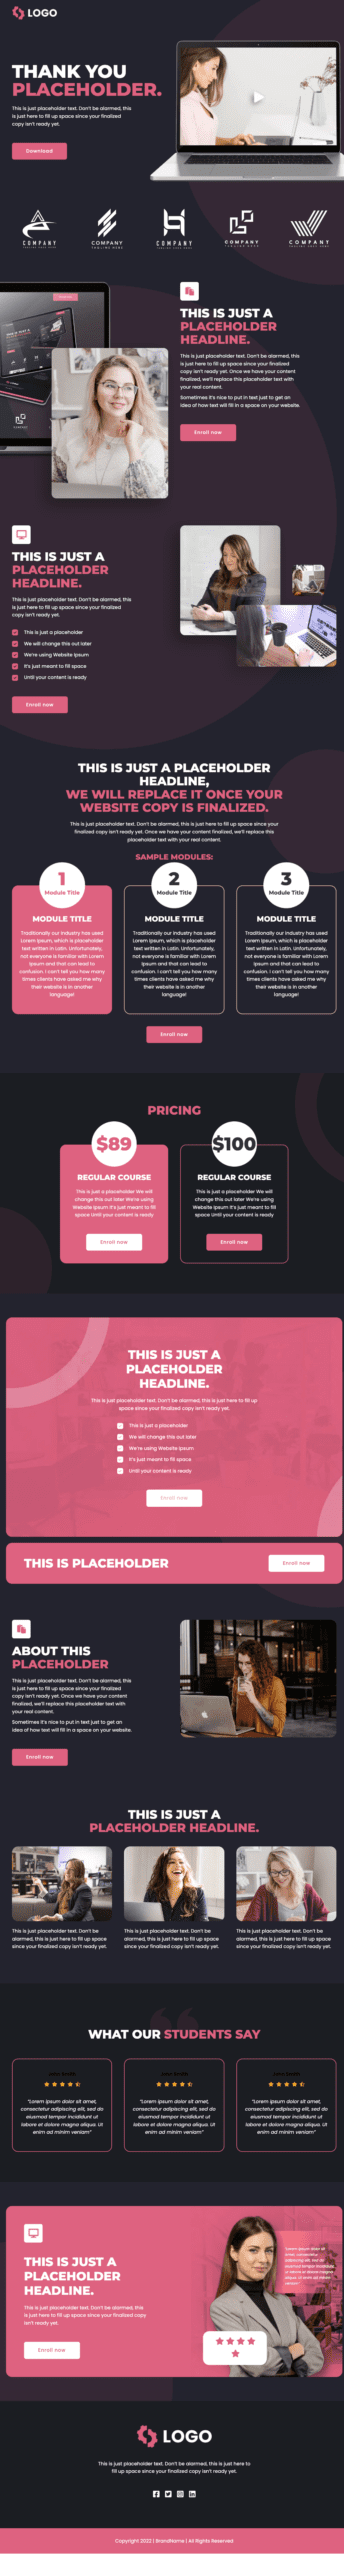 dropfunnels.com_course-pink-black_sales_